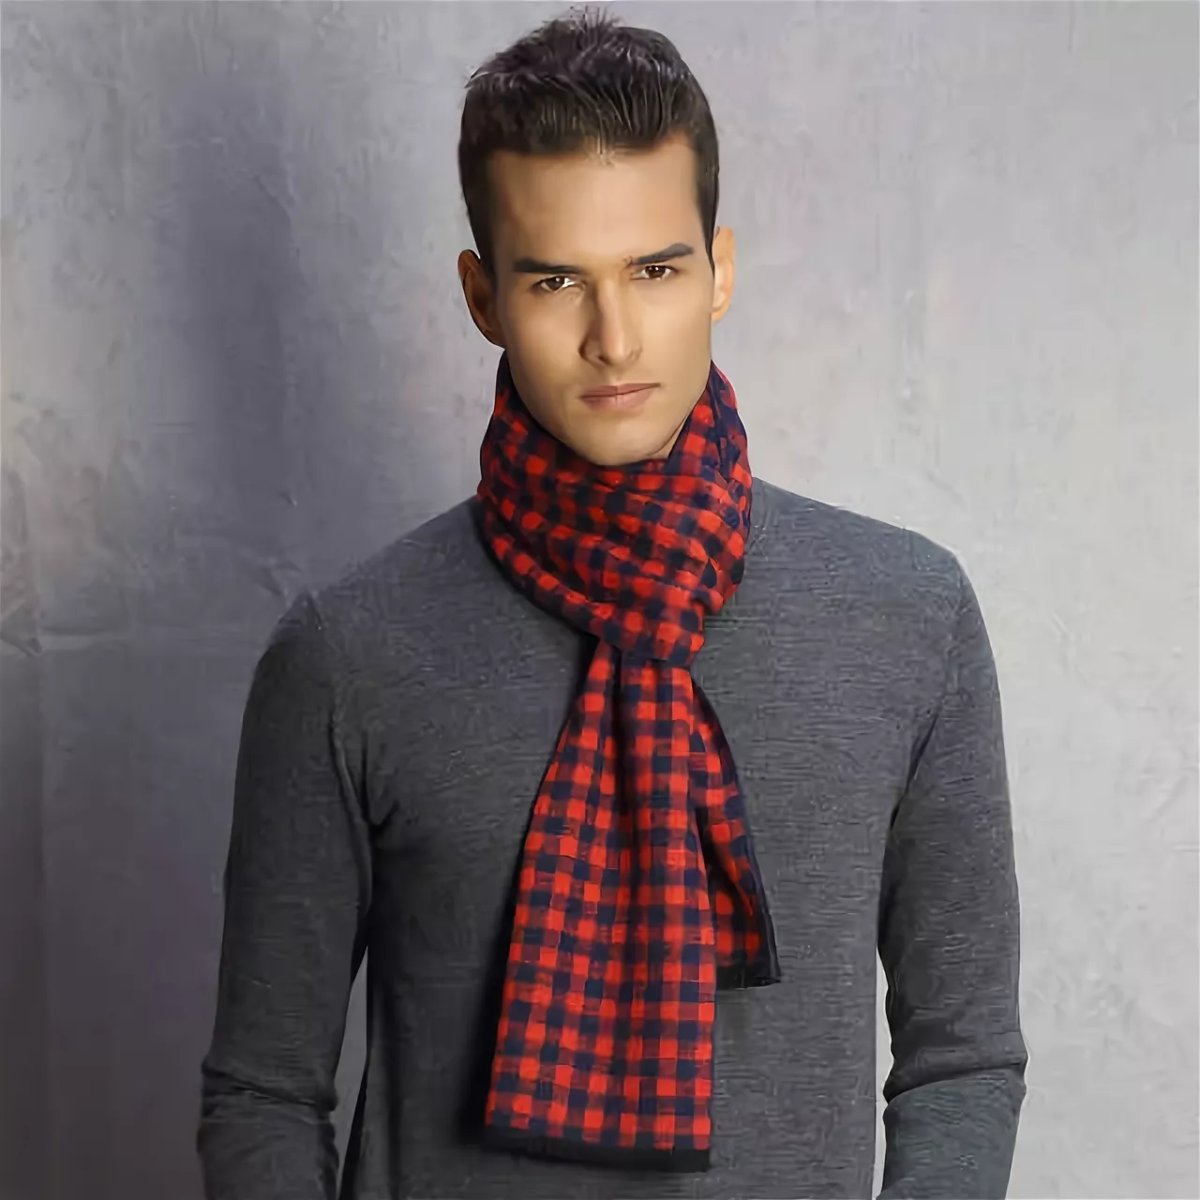 Как подобрать шарф мужчине - несколько важных советов
как подобрать шарф мужчине - несколько важных советов